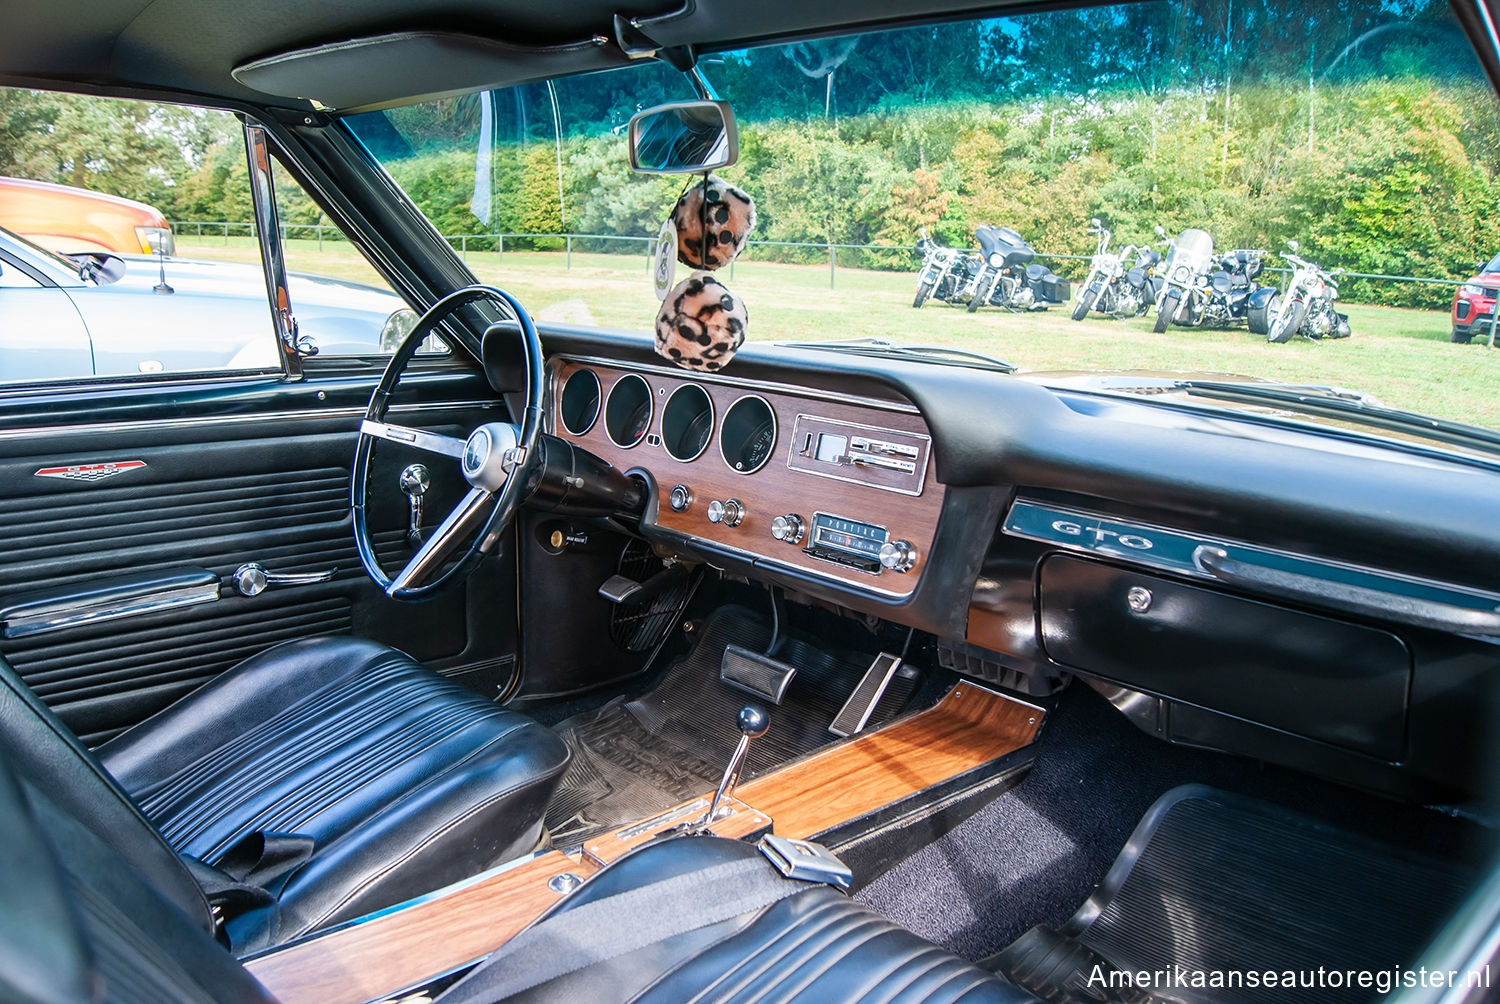 Pontiac GTO uit 1967